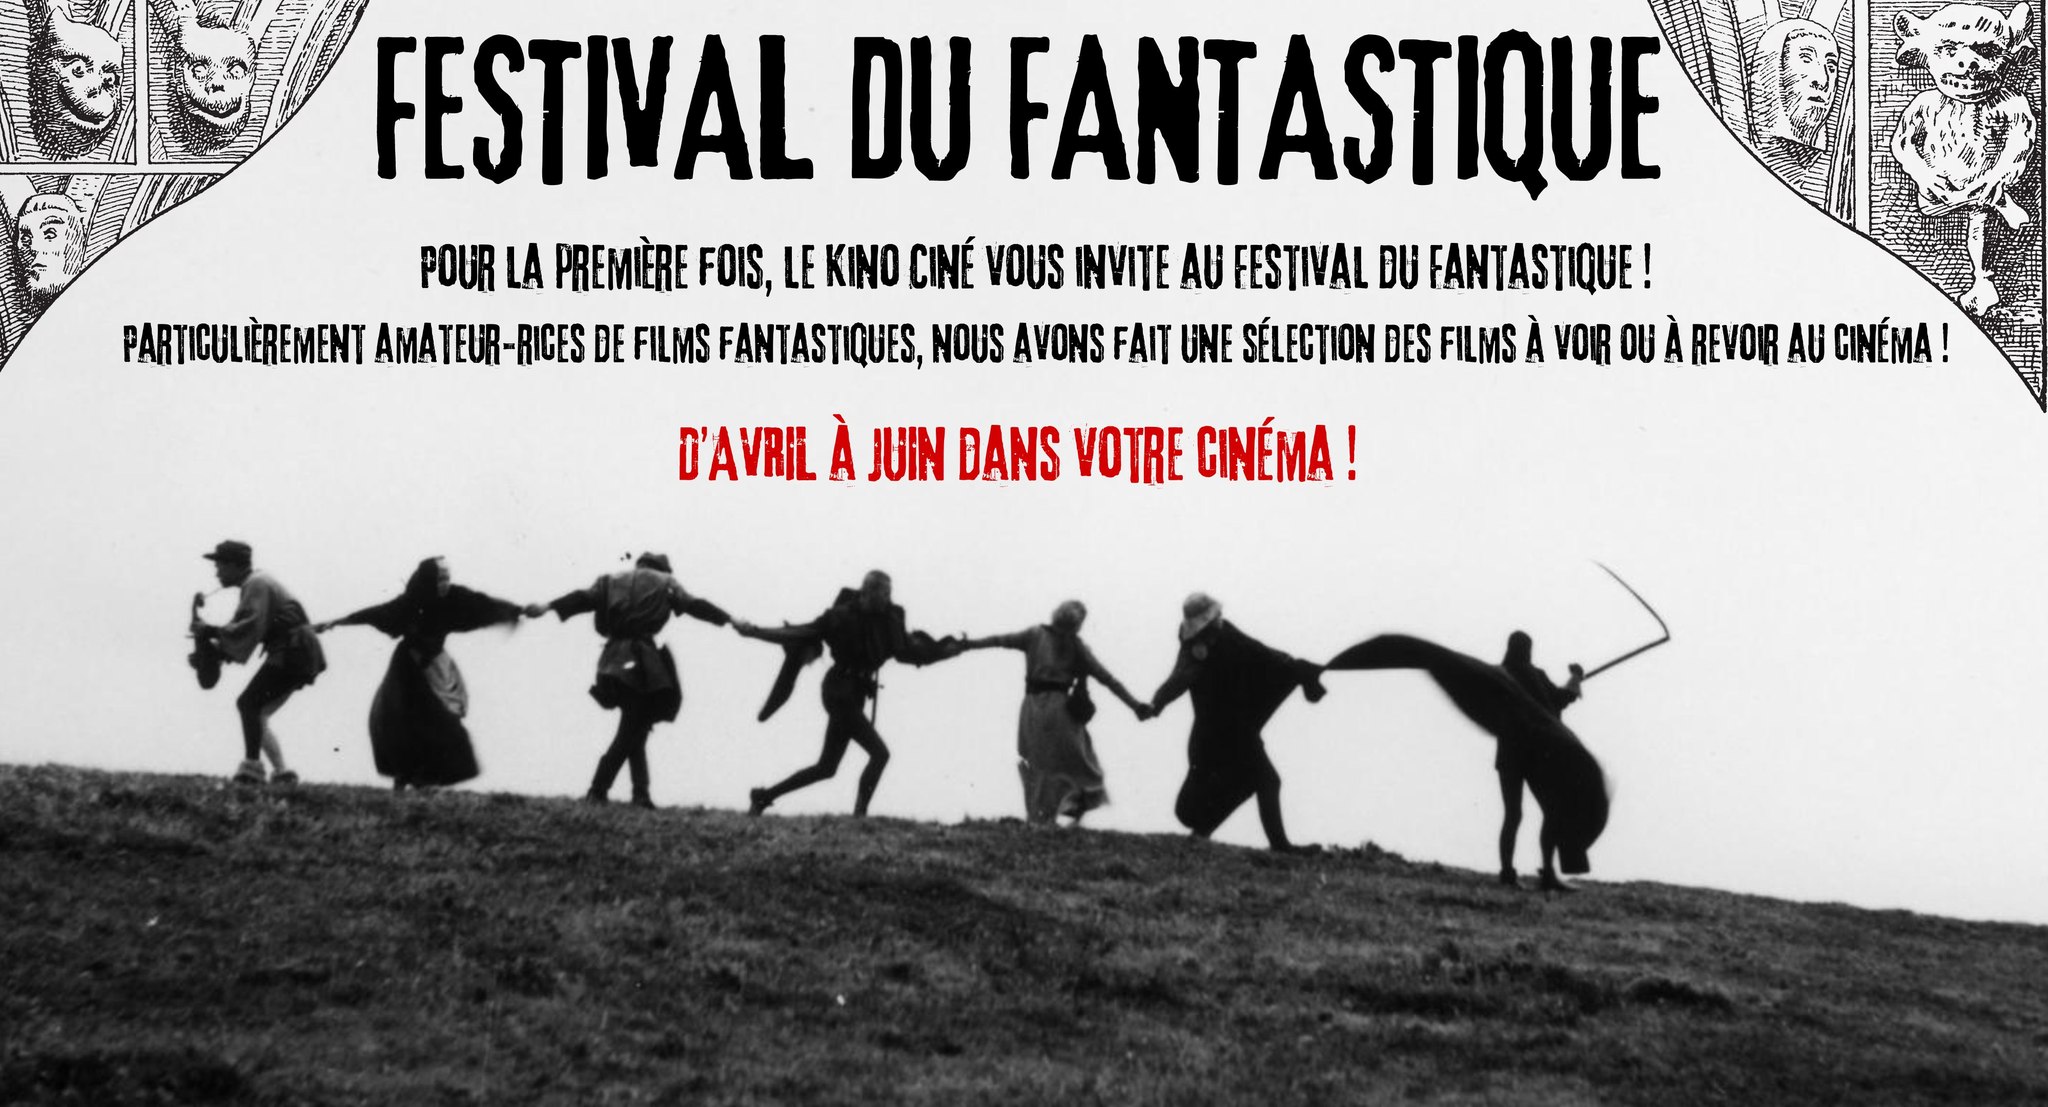 Festival du fantastique au kino ciné